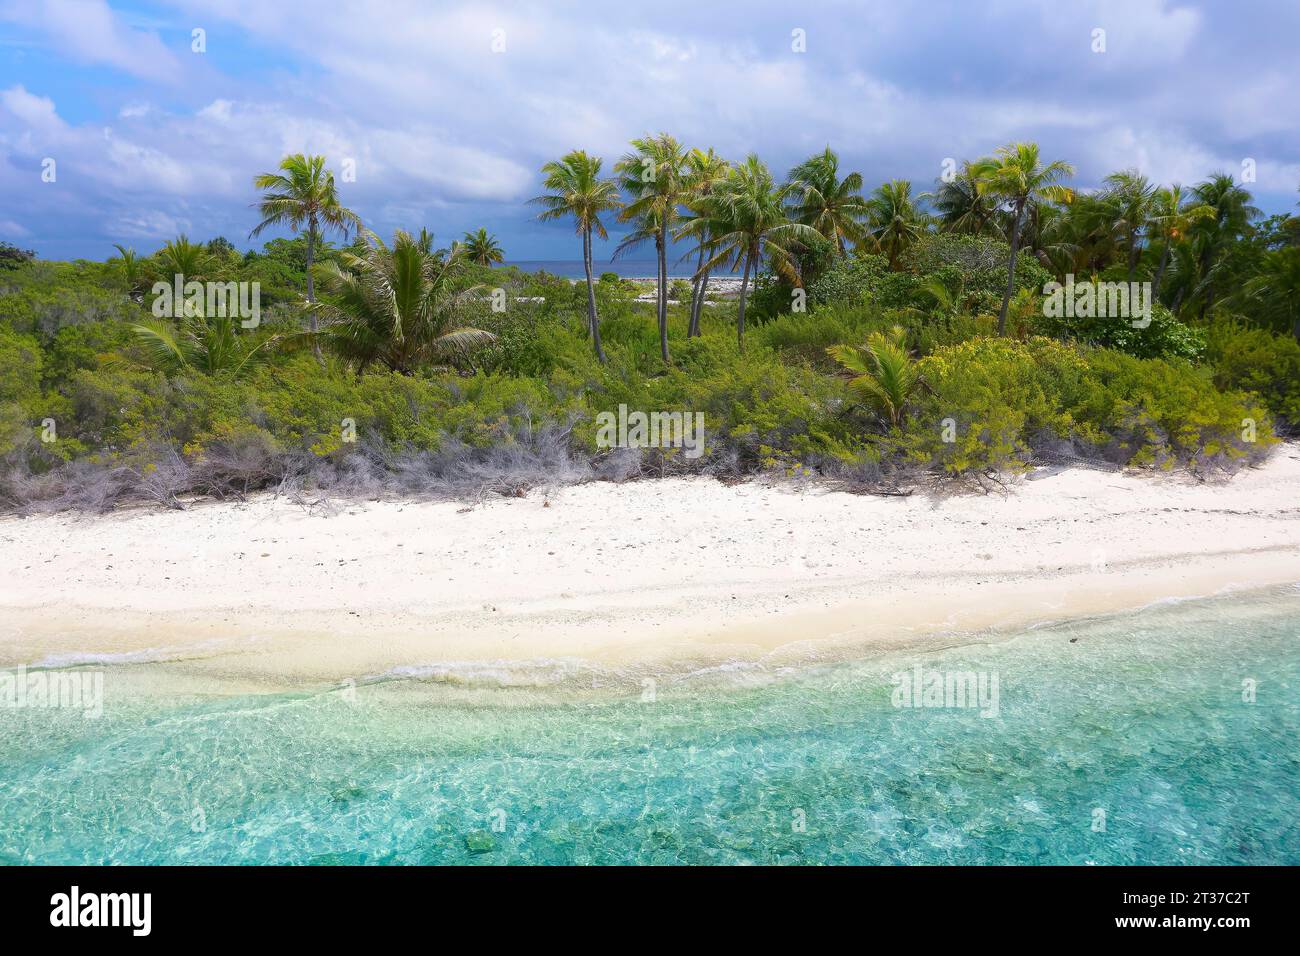 Vista aerea, paesaggio tipico dell'isola, isola disabitata, laguna, spiaggia sabbiosa, cespugli e palme da cocco (Cocos nicifera), atollo Fakarava, Tuamotu Foto Stock